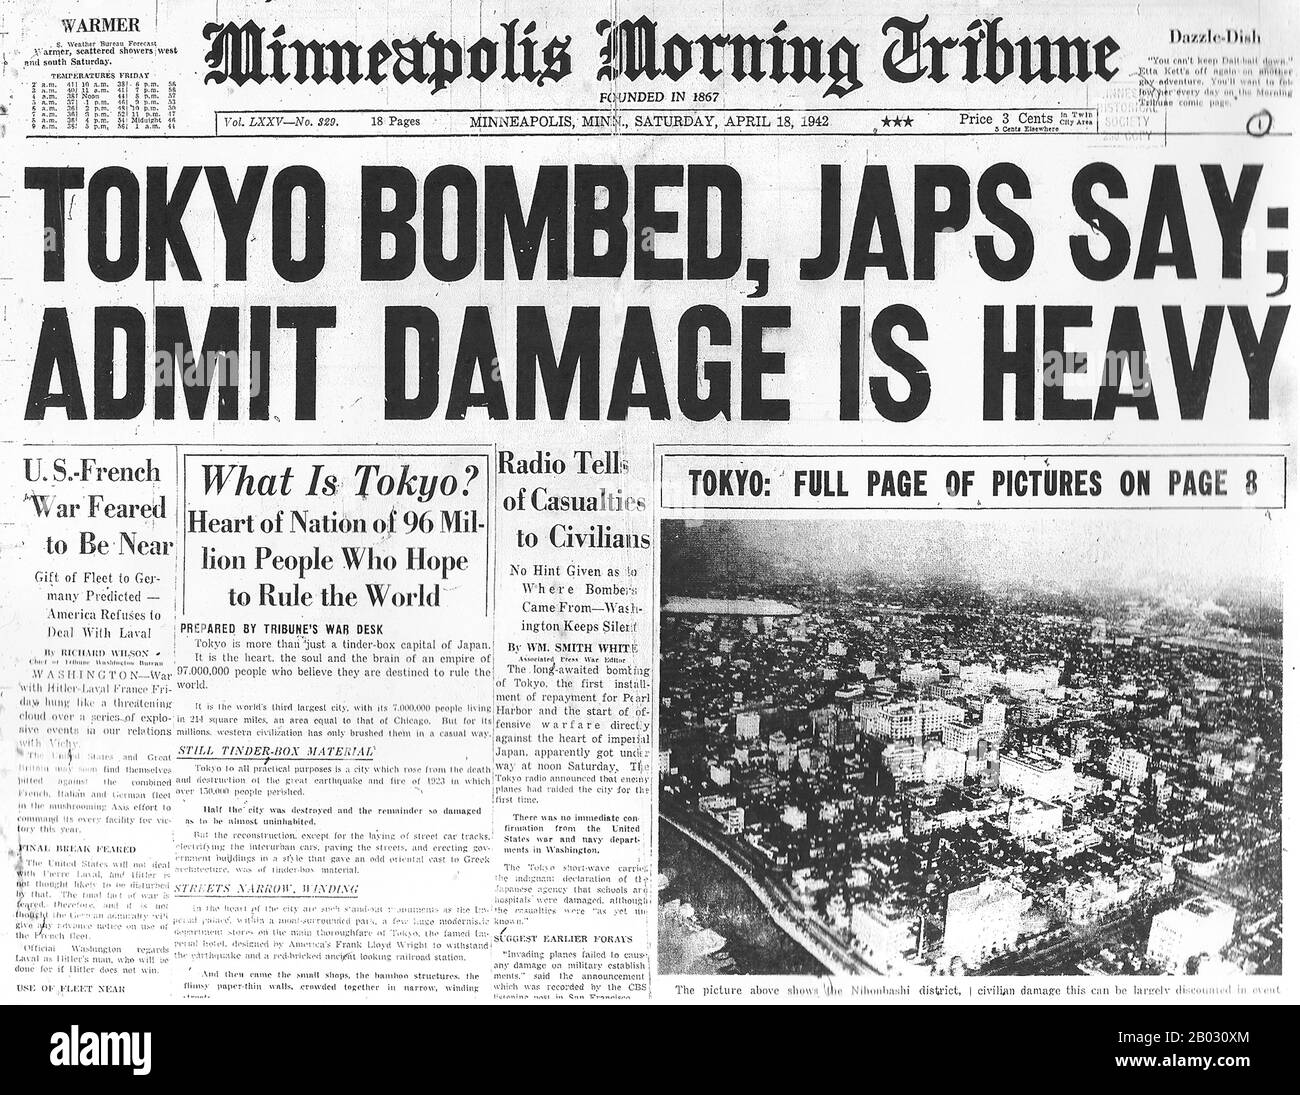 Le Raid de Doolittle, également connu sous le nom De Raid de Tokyo, le 18 avril 1942, fut un raid aérien des États-Unis sur la capitale japonaise Tokyo et d'autres endroits sur l'île de Honshu pendant la seconde Guerre mondiale, le premier raid aérien à frapper les îles japonaises d'origine. Il a démontré que le Japon lui-même était vulnérable aux attaques aériennes américaines, a servi de représailles à l'attaque japonaise contre Pearl Harbor le 7 décembre 1941 et a donné un élan important au moral des États-Unis tout en endommageant le moral japonais. Le raid a été planifié et dirigé par le lieutenant-colonel James Doolittle. Seize forces aériennes de l'armée américaine B-25-B Mitchell moyen Banque D'Images